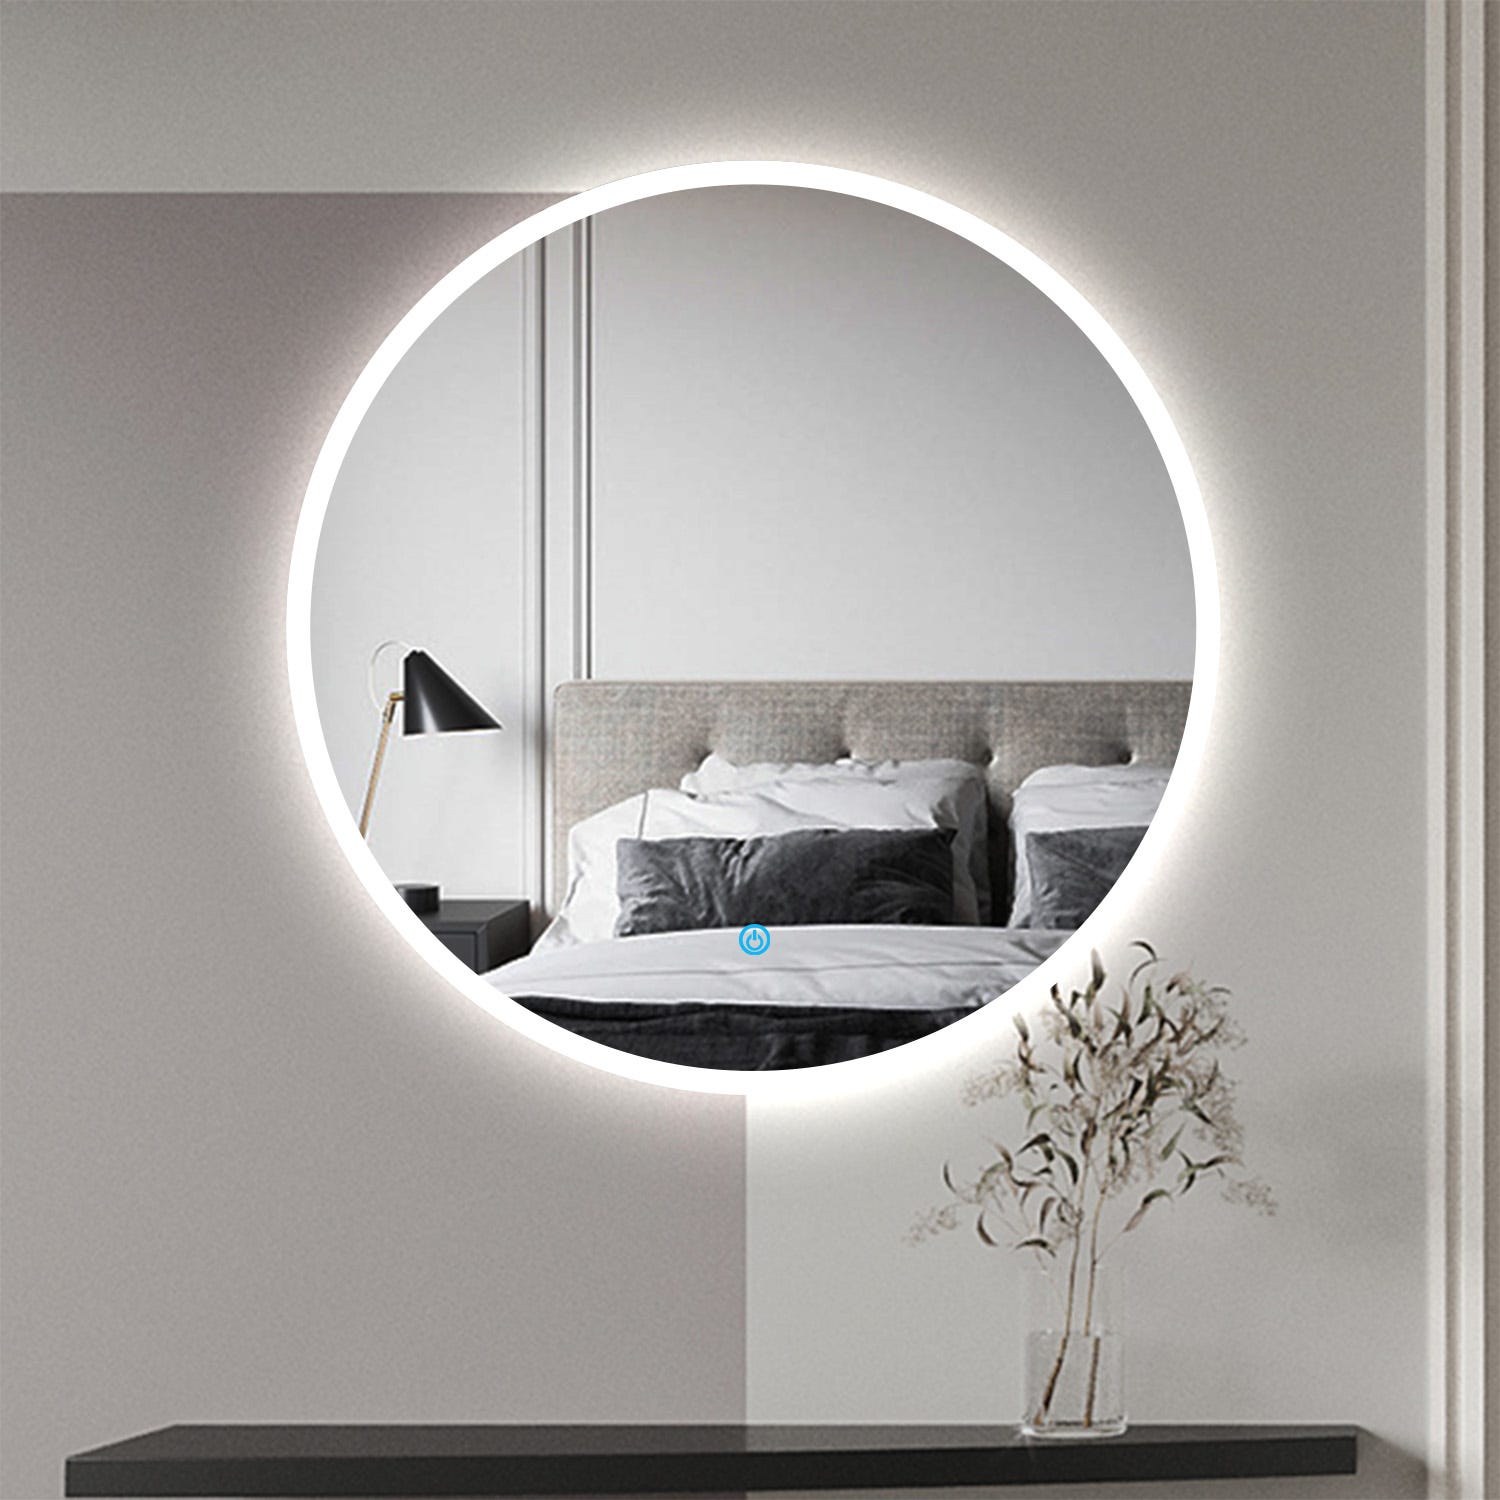 LAMP6001-80cm - Specchi LED - - Specchio Rotondo LED 32W diametro 80cm  Bordo Argento accensione con Sensore IR